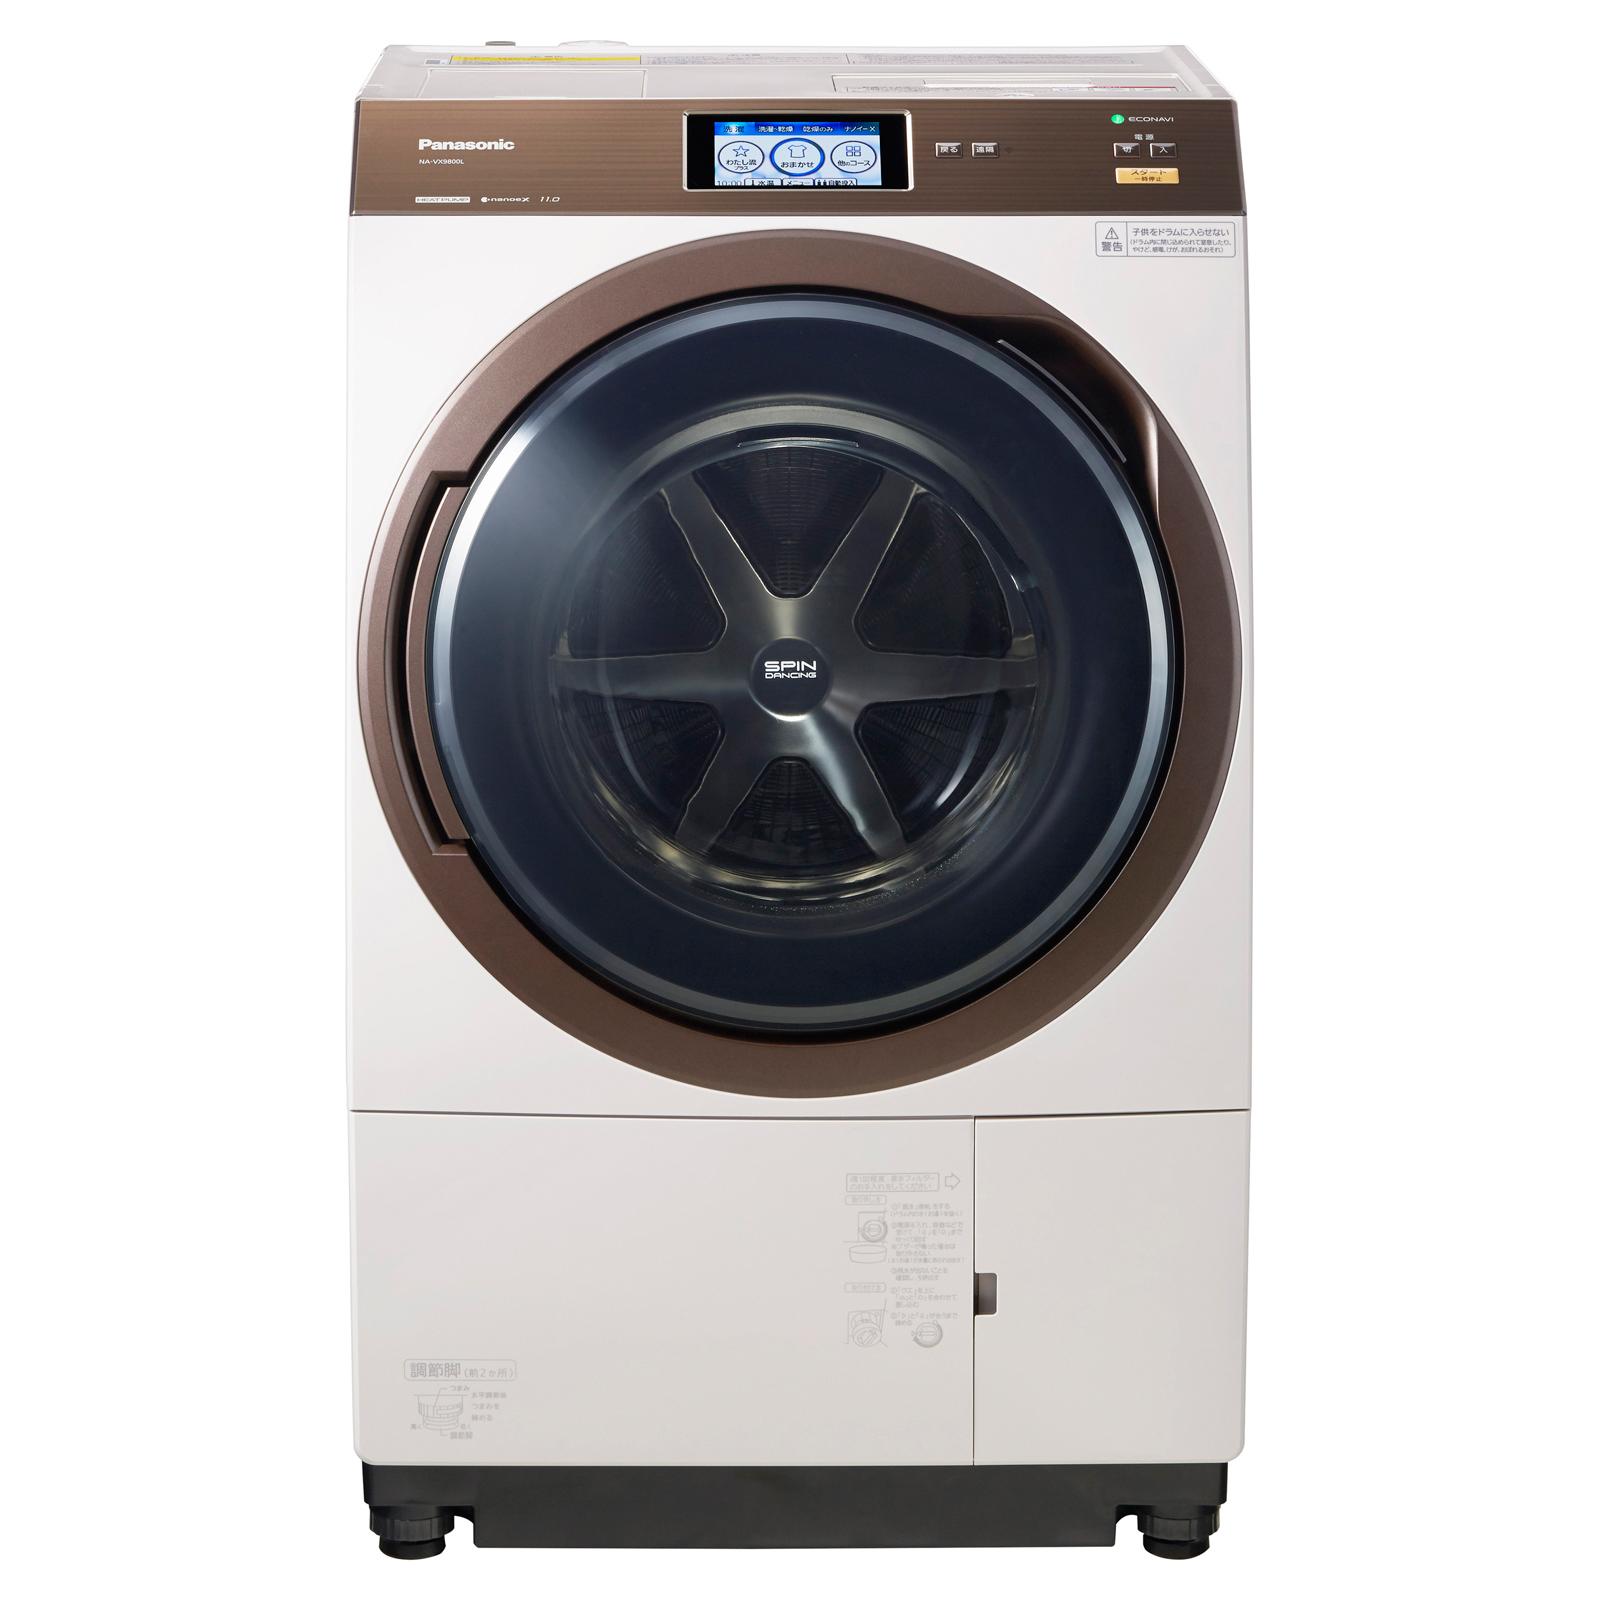 ななめドラム洗濯乾燥機 NA-VX9800L-N ノーブルシャンパン 正面